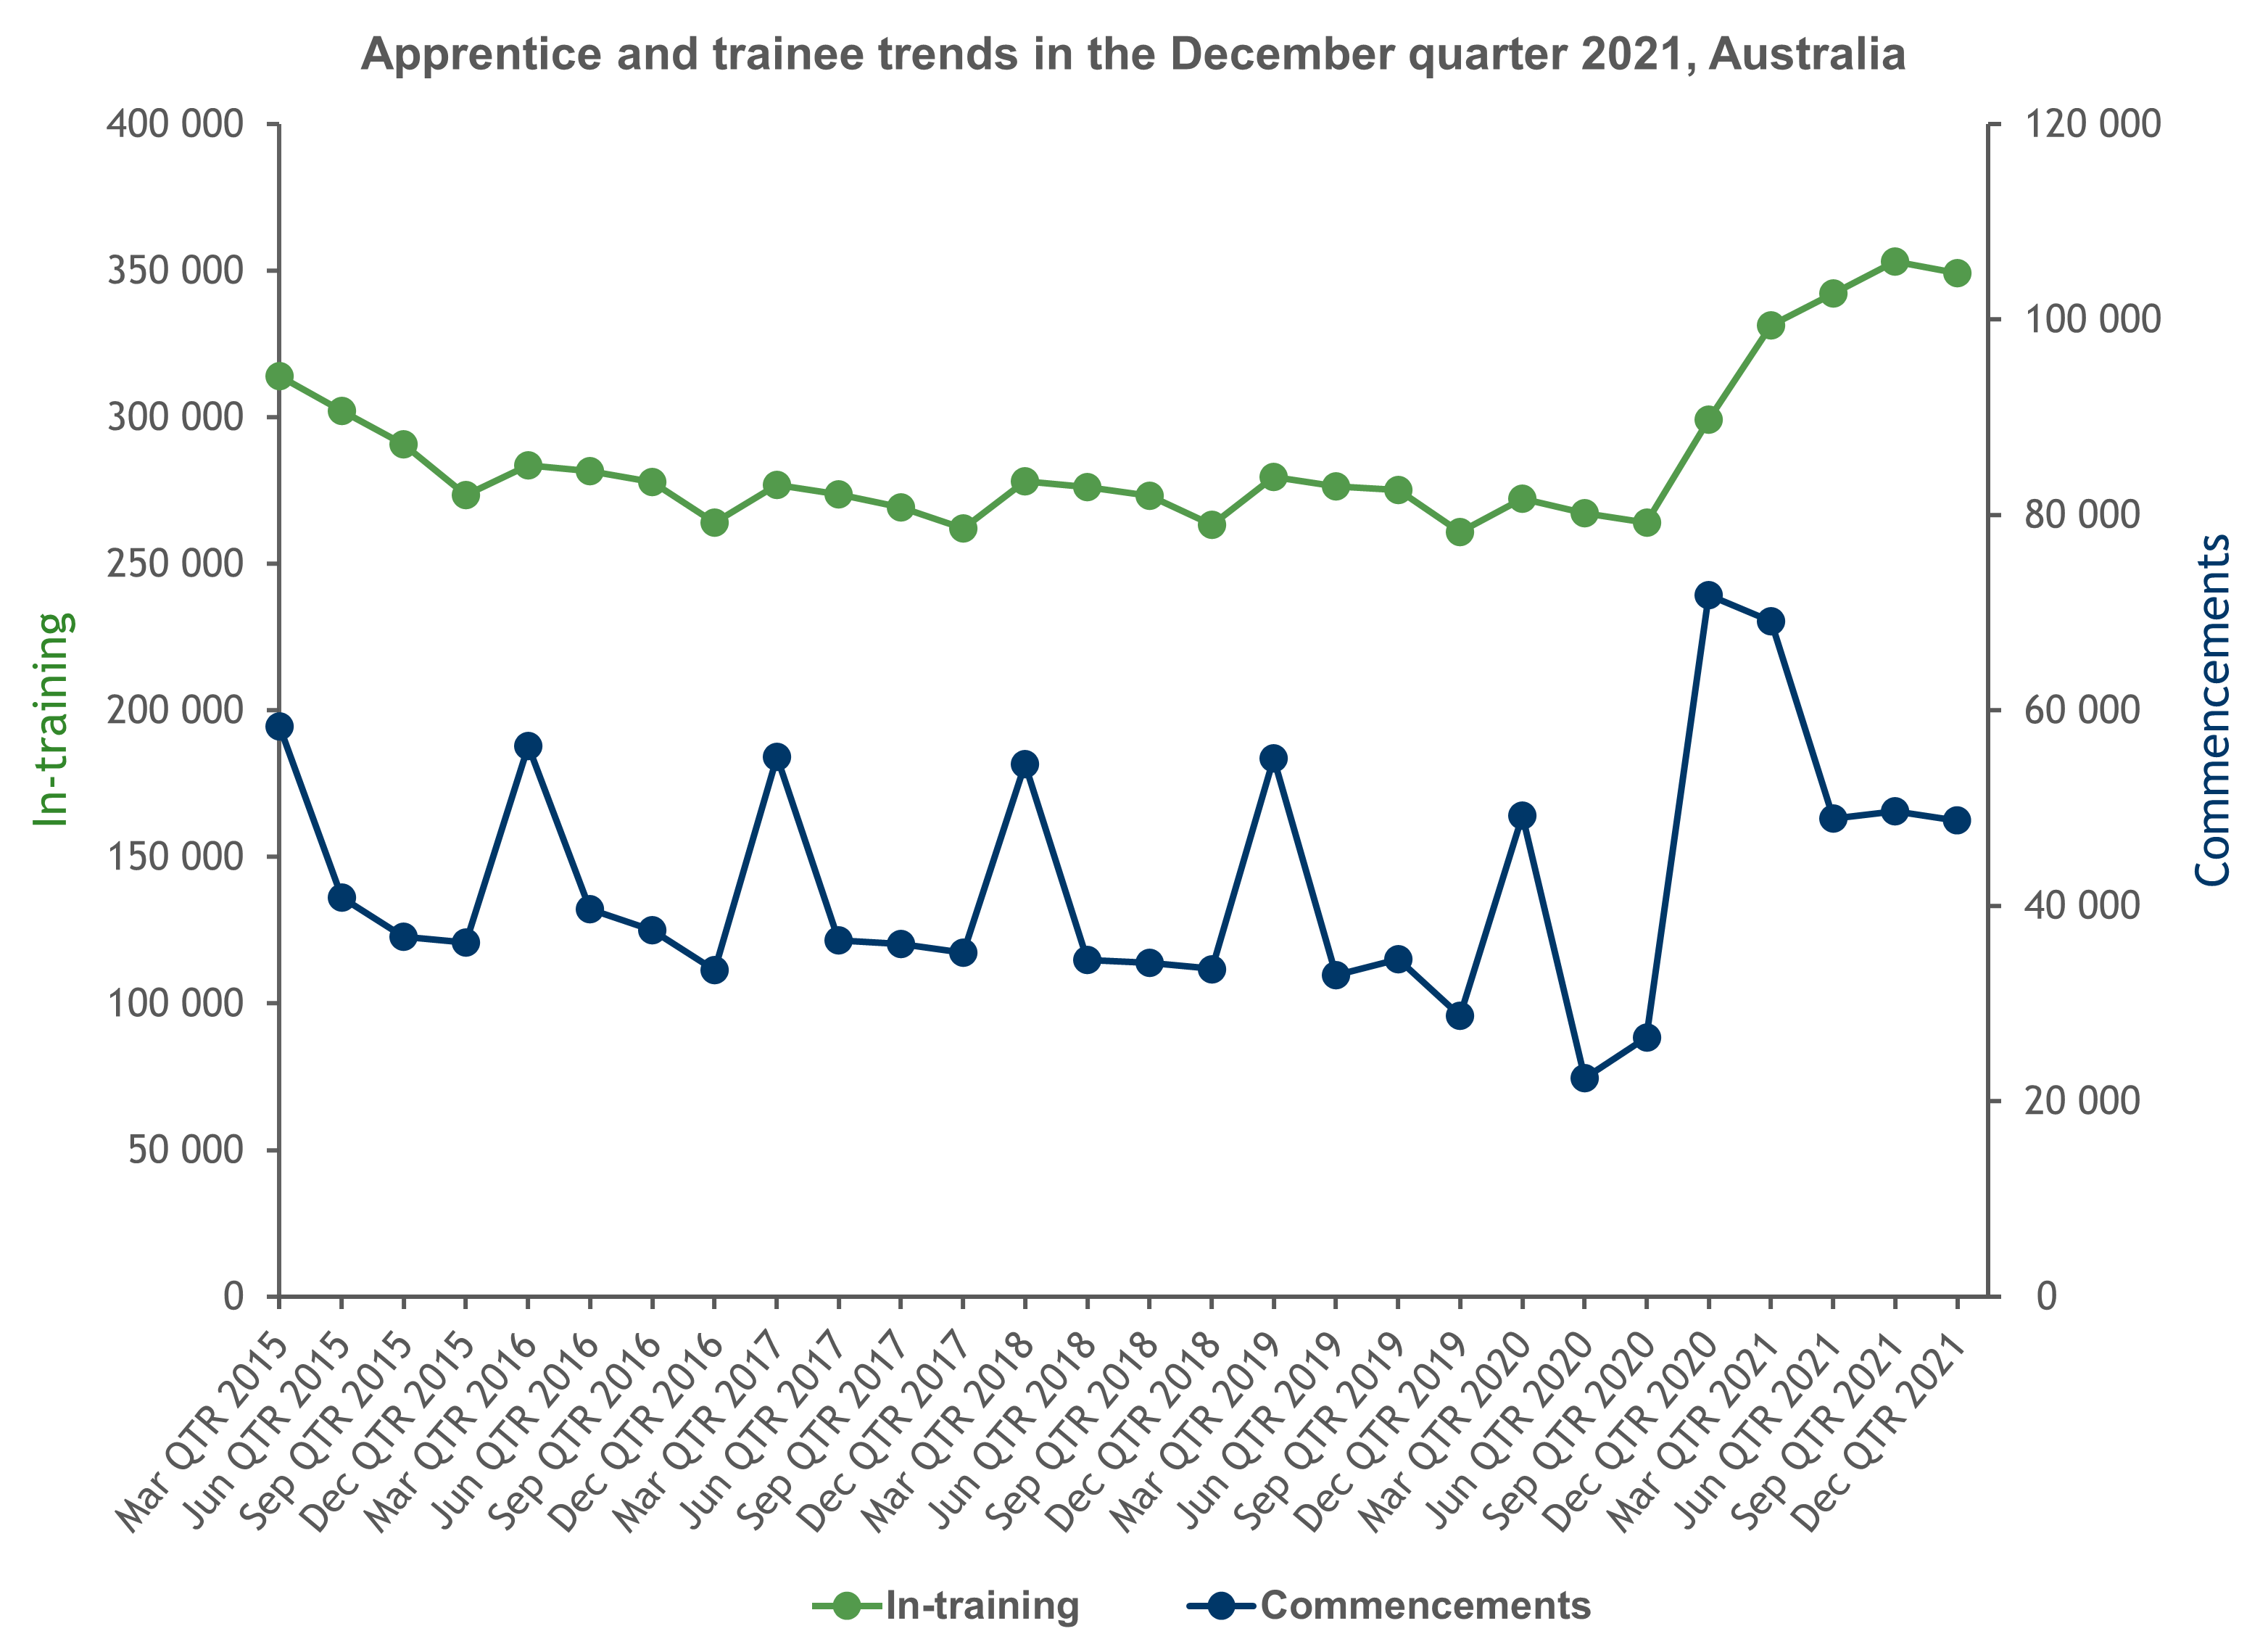 Apprentice and trainee trends in December quarter 2021, Australia